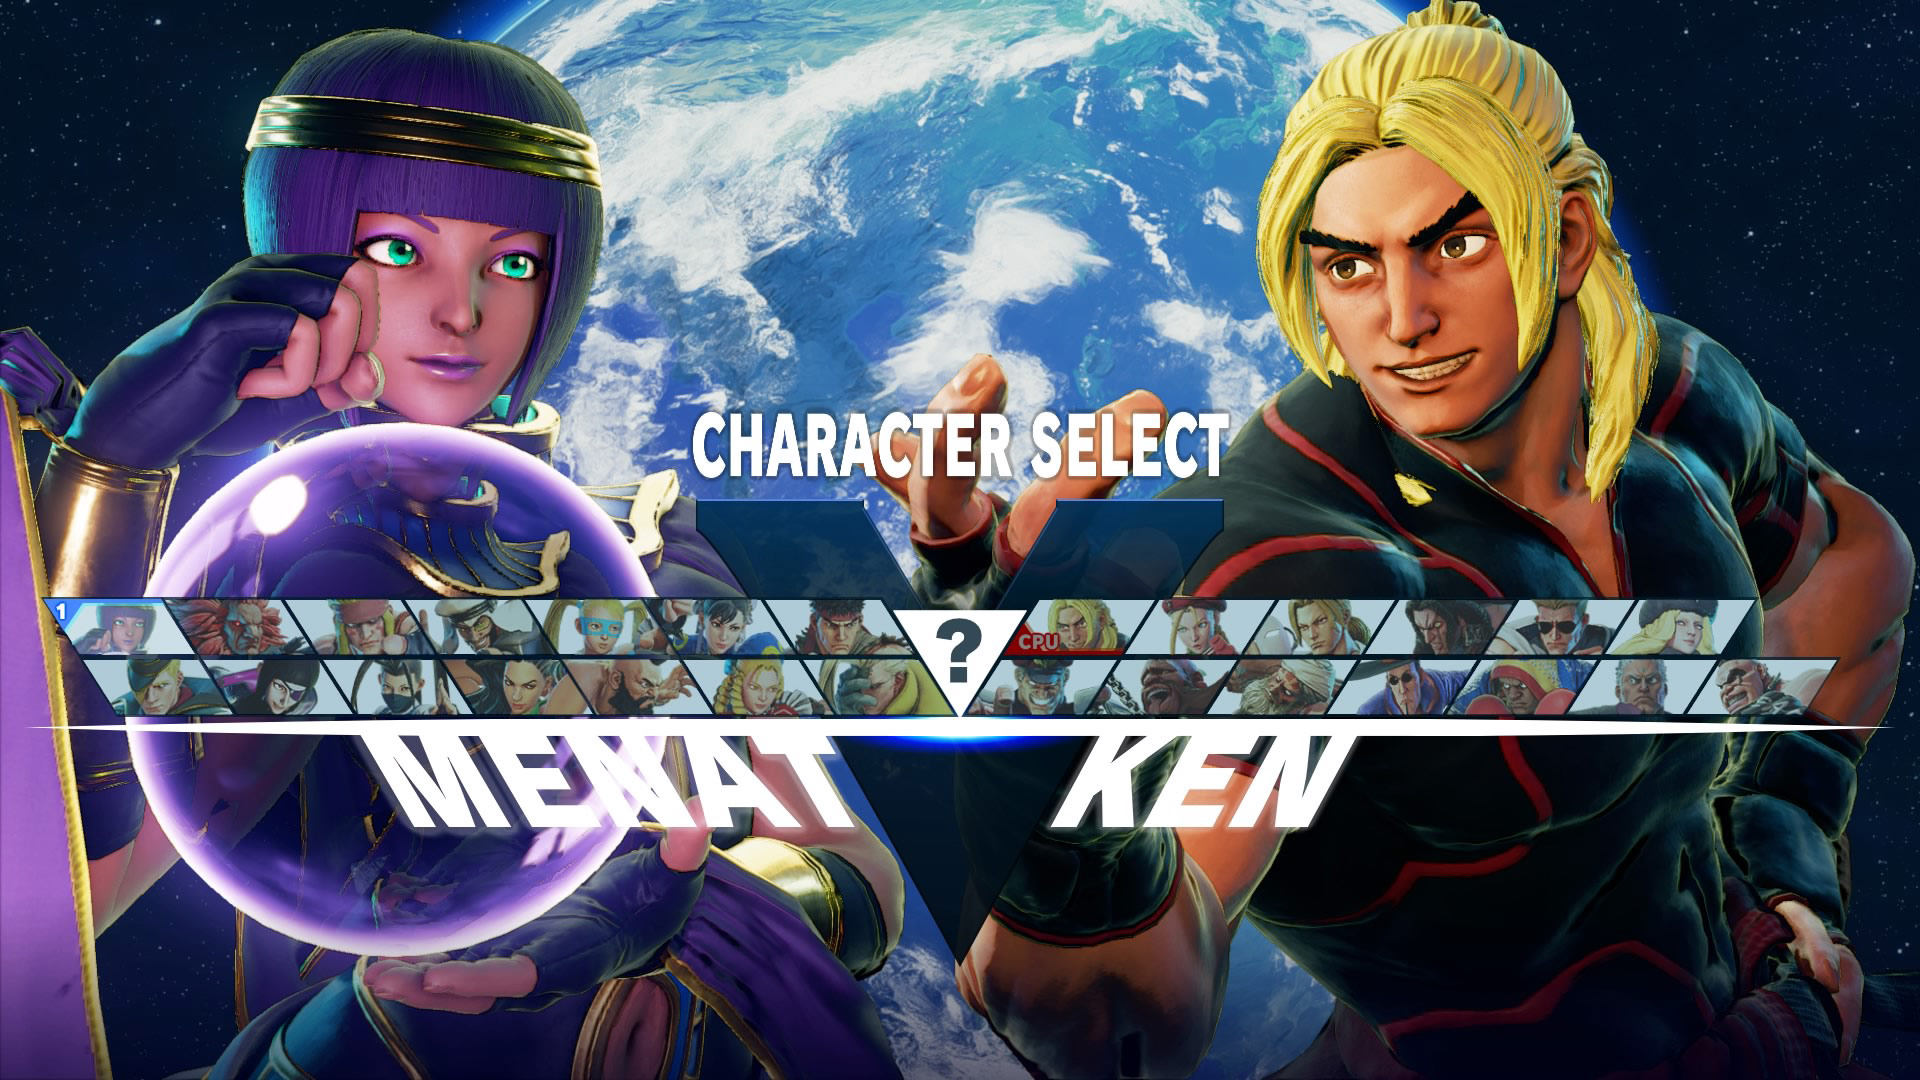 Street Fighter V - Vega vs Cammy Gameplay - Gamescom 2015 